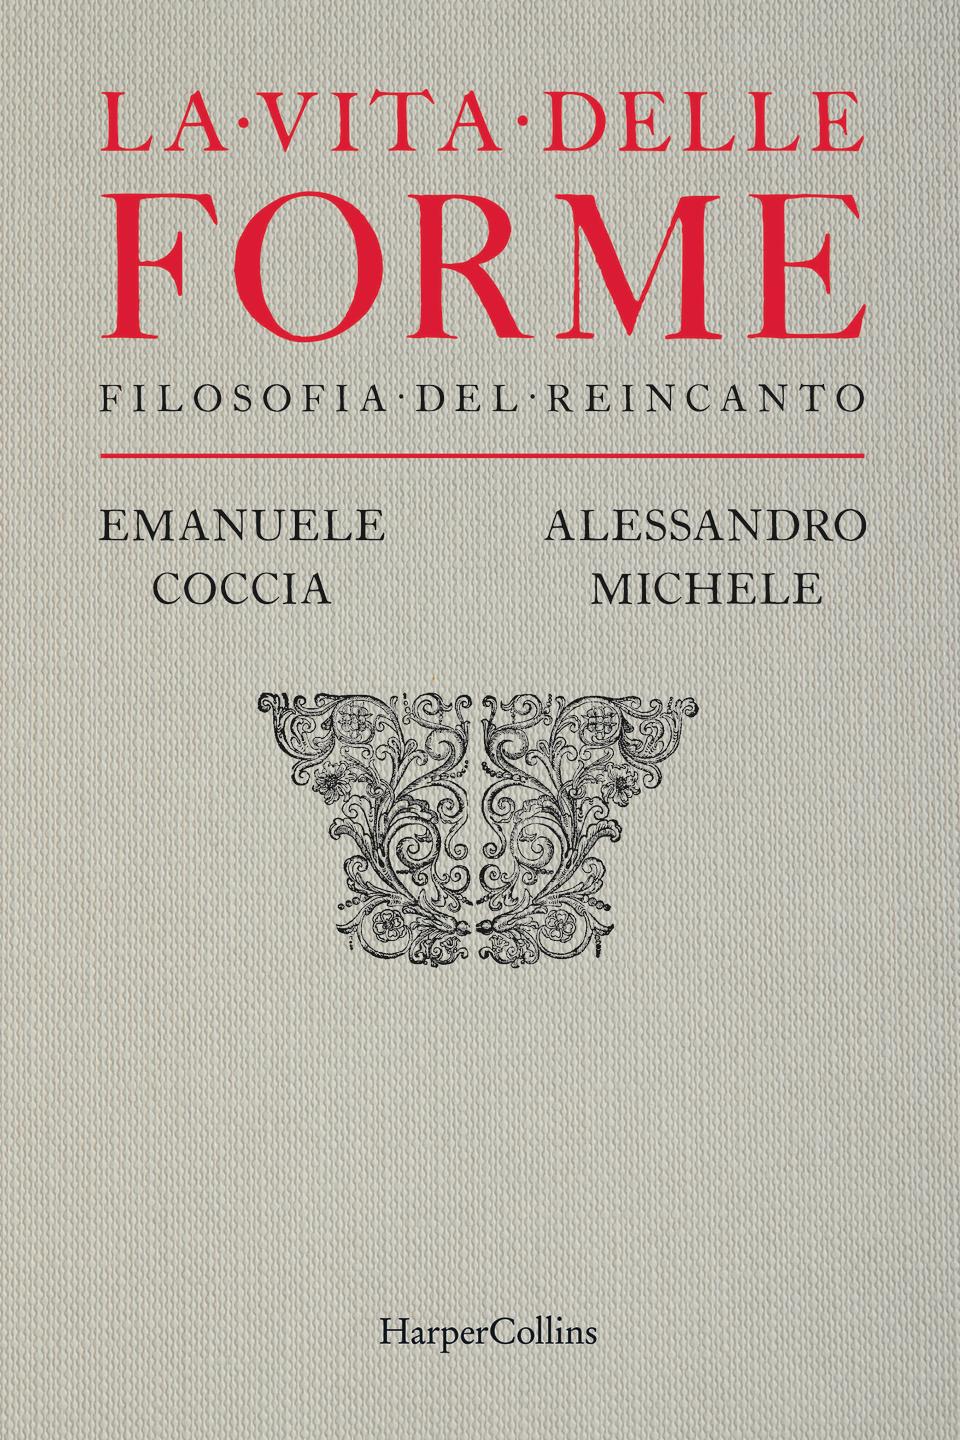 Το εξώφυλλο του “La Vita delle Forme”.